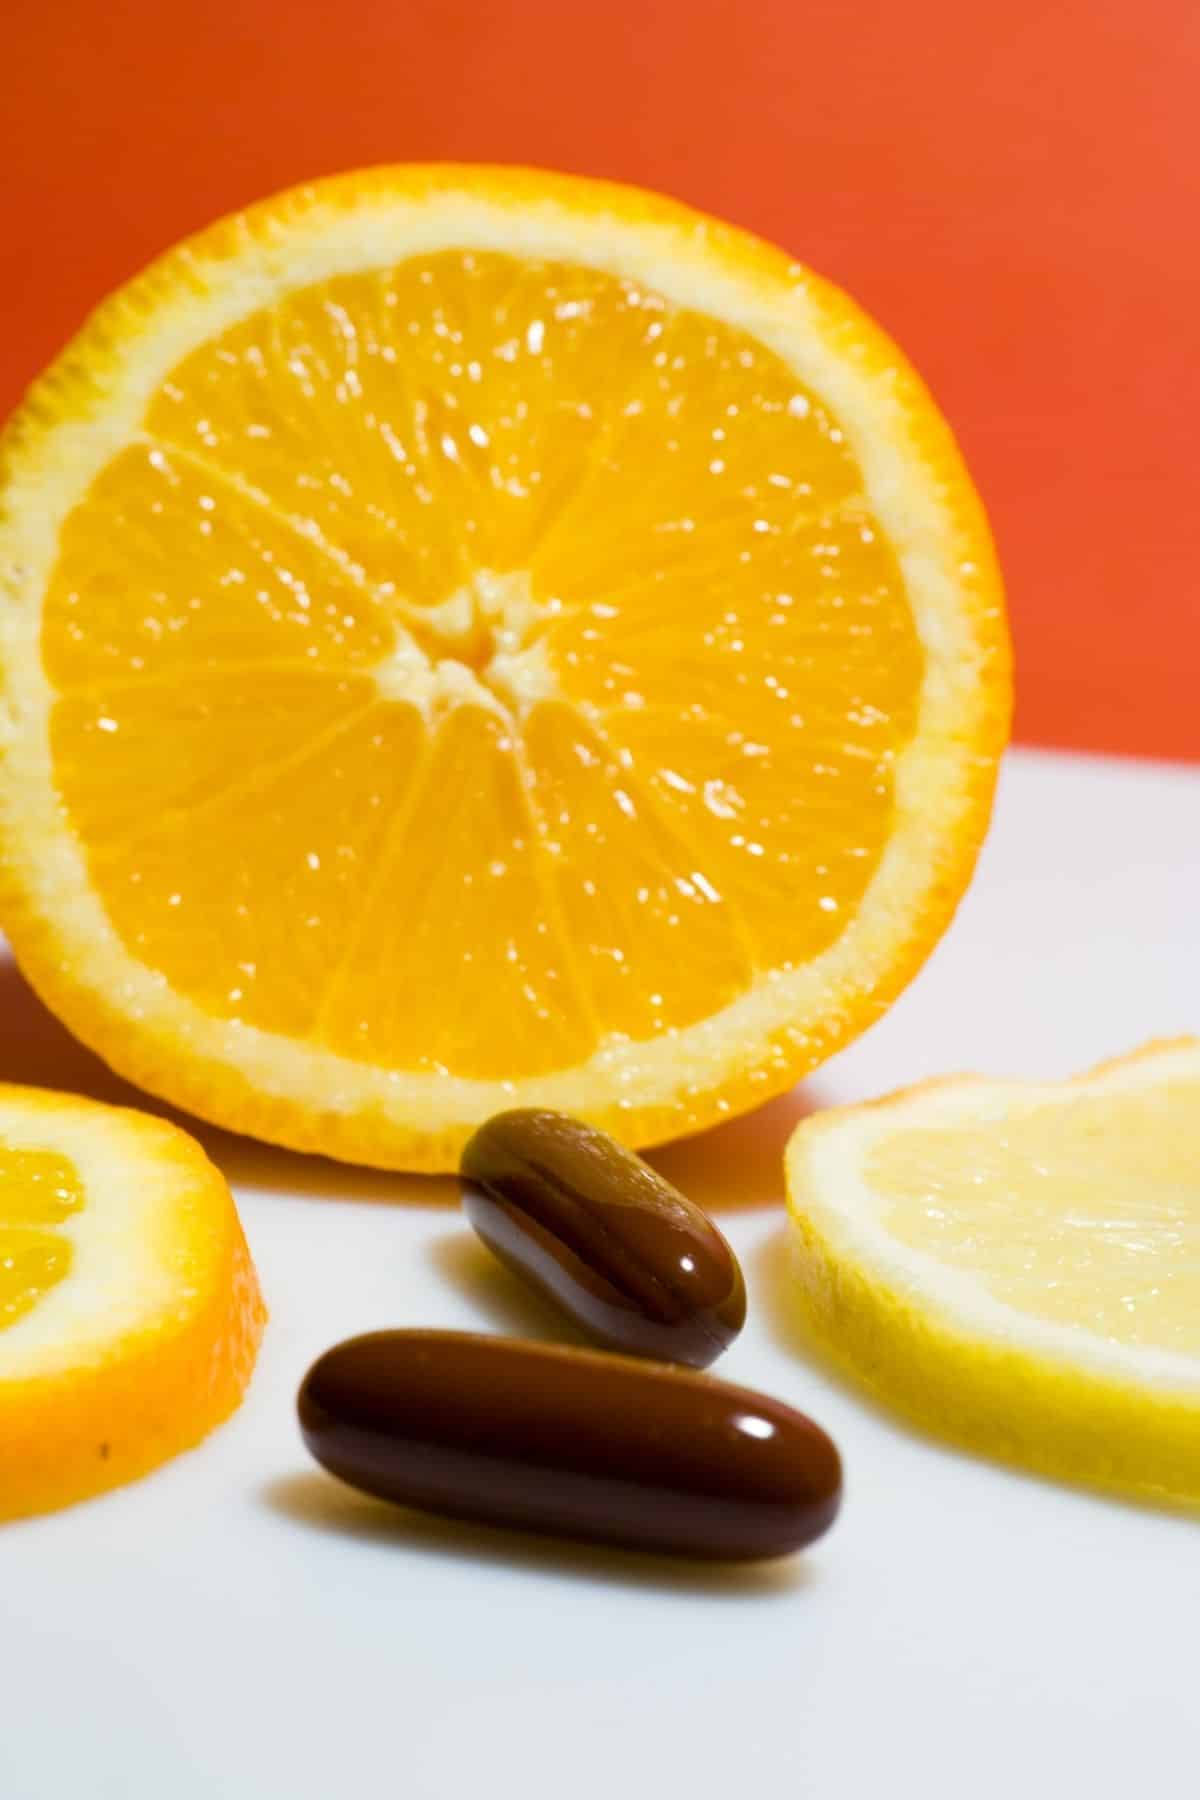 cápsulas de vitamina c frente a una naranja en rodajas.